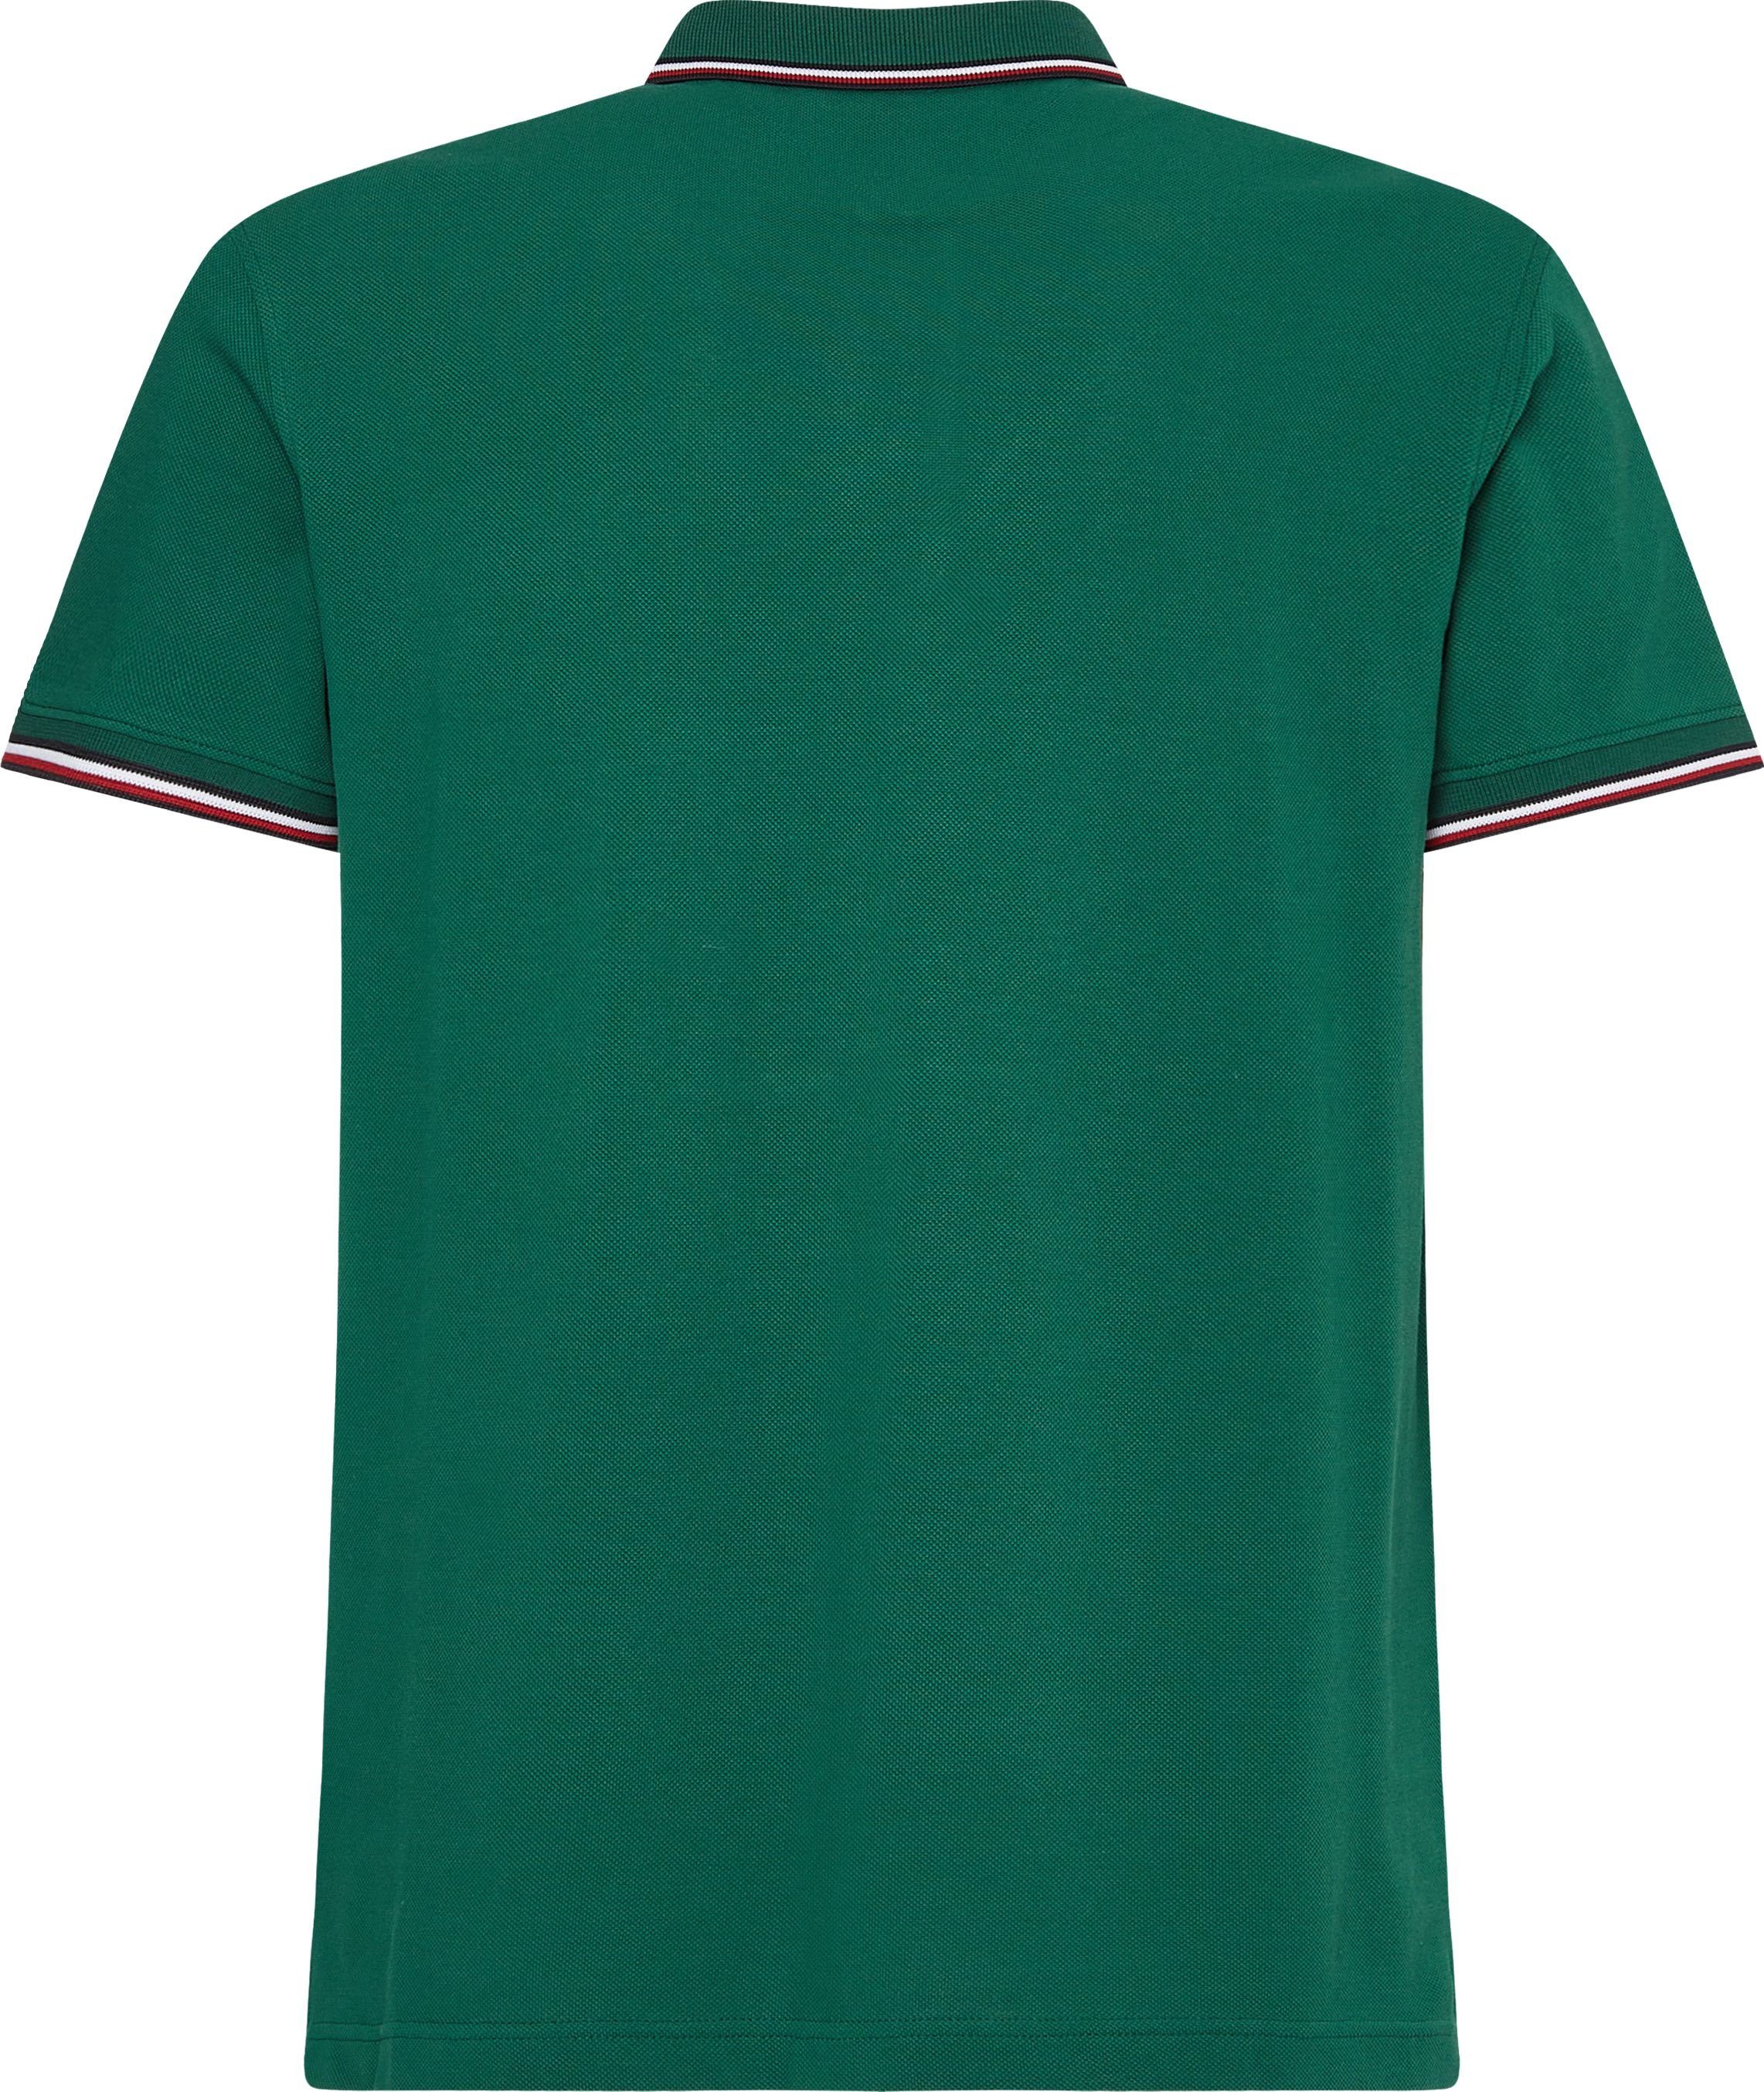 Tommy Hilfiger Poloshirt TIPPED grün Ärmel Kragen am Details und RWB mit kontrastfarbenen POLO 1985 SLIM